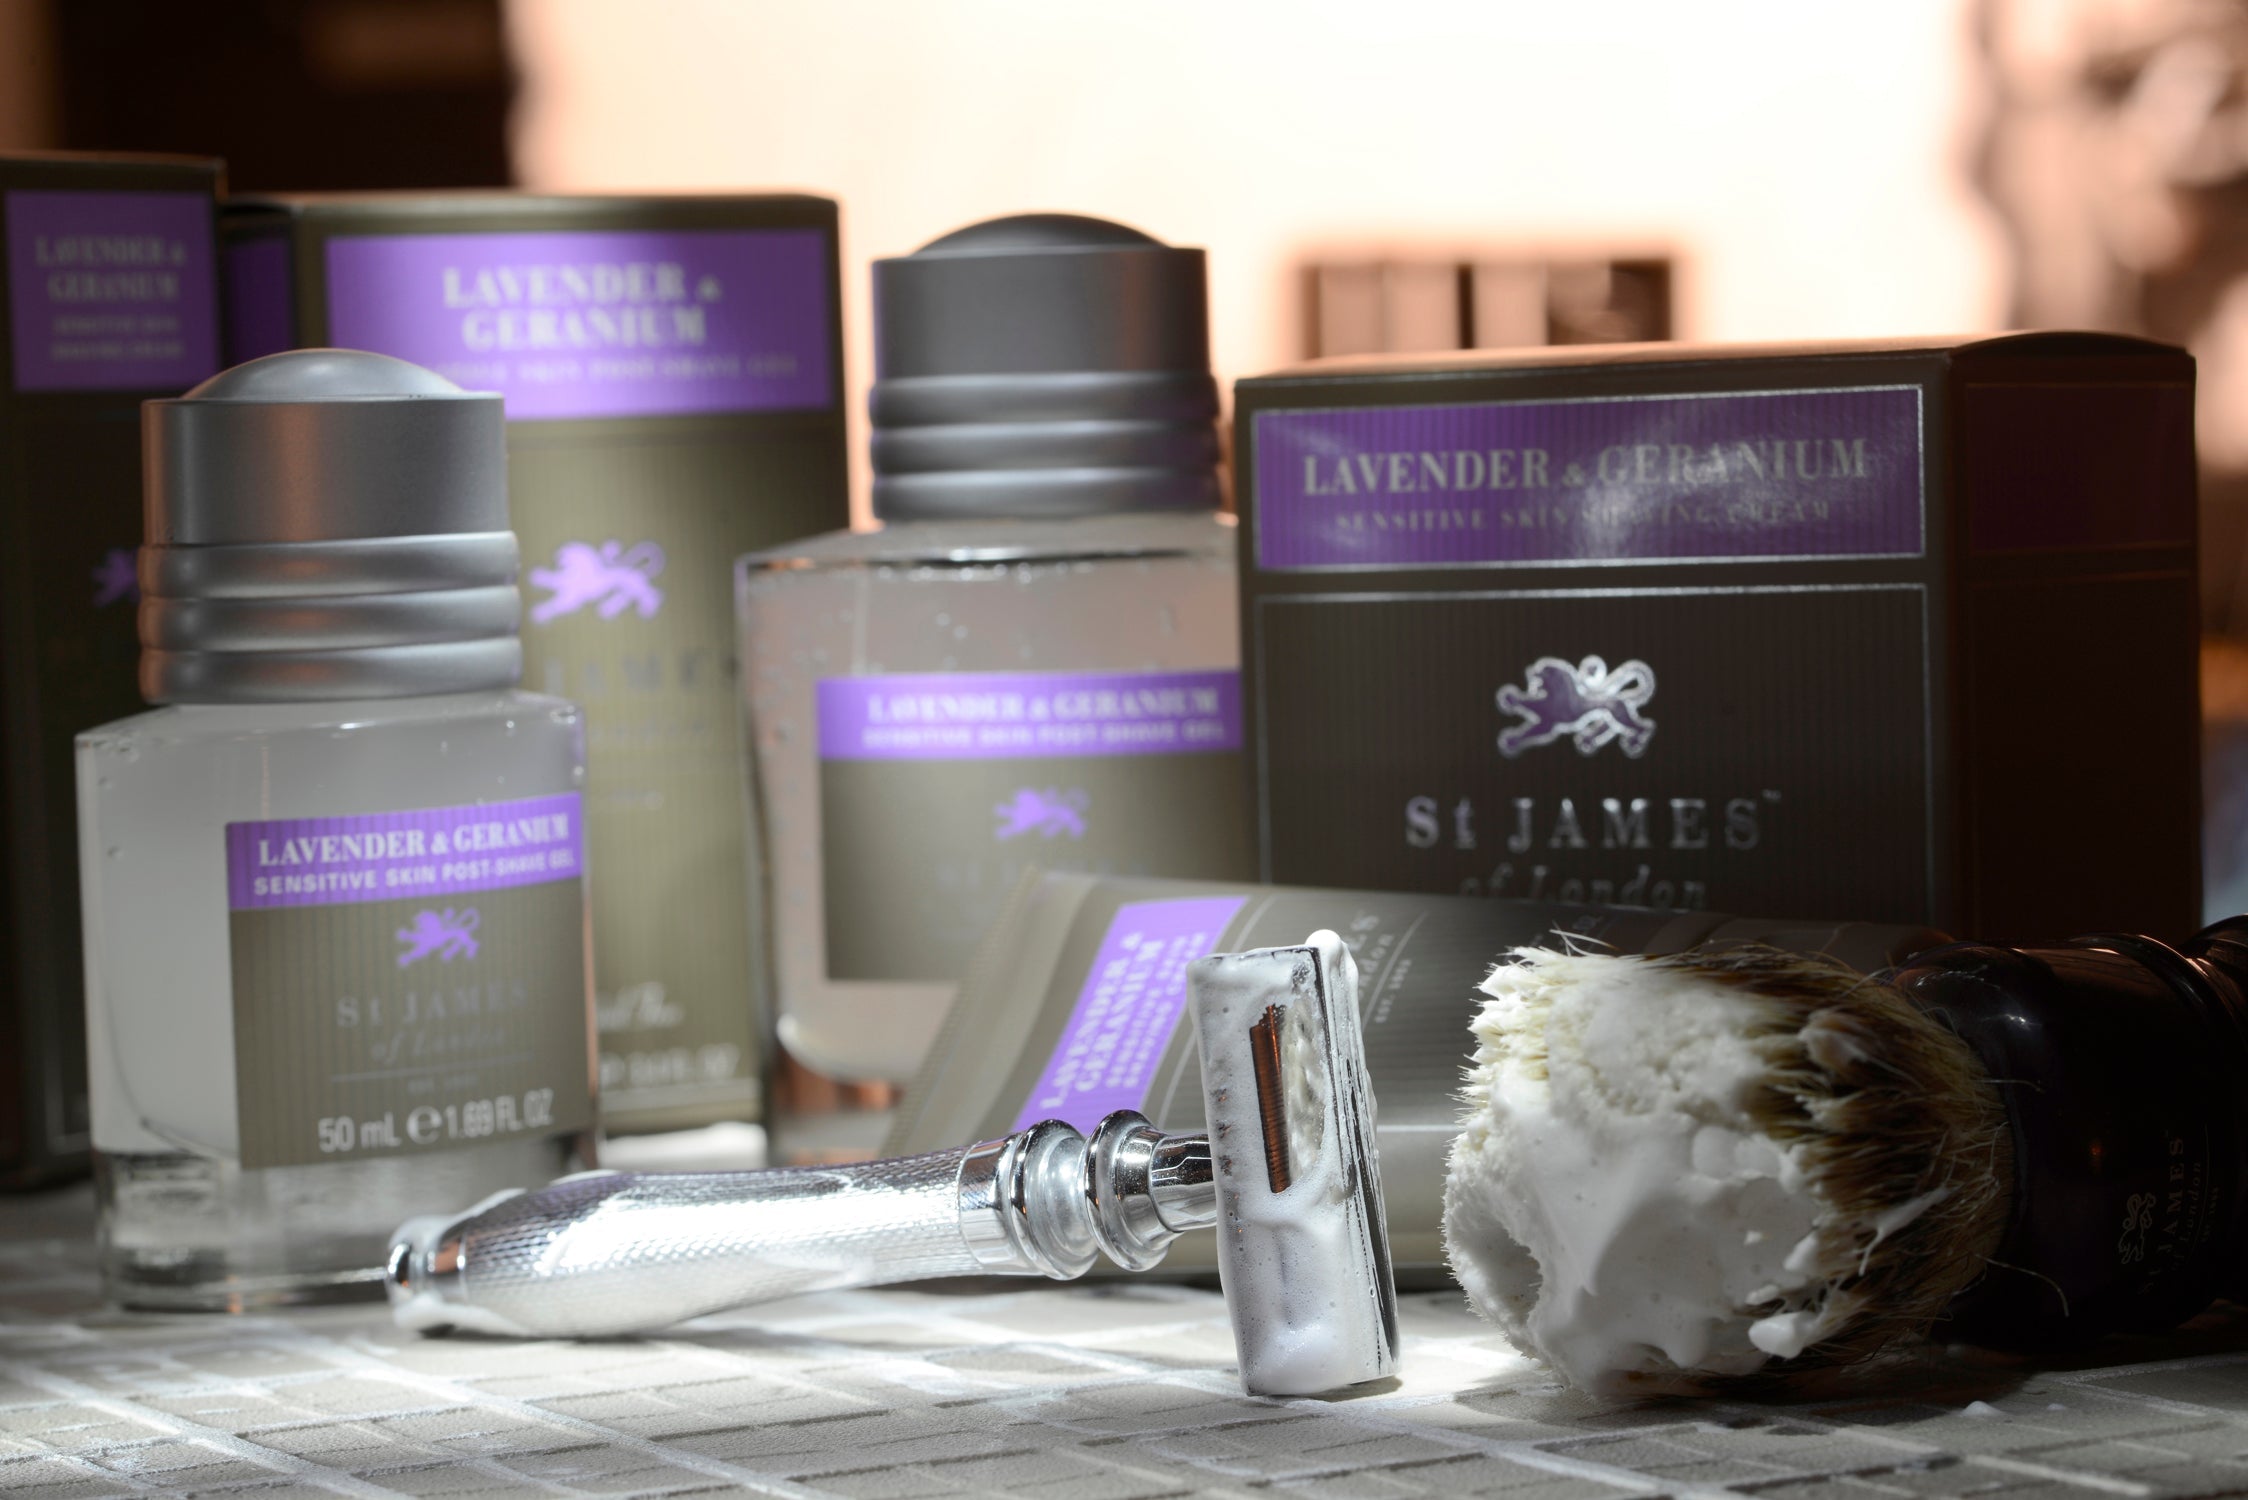 Lavender & Geranium products